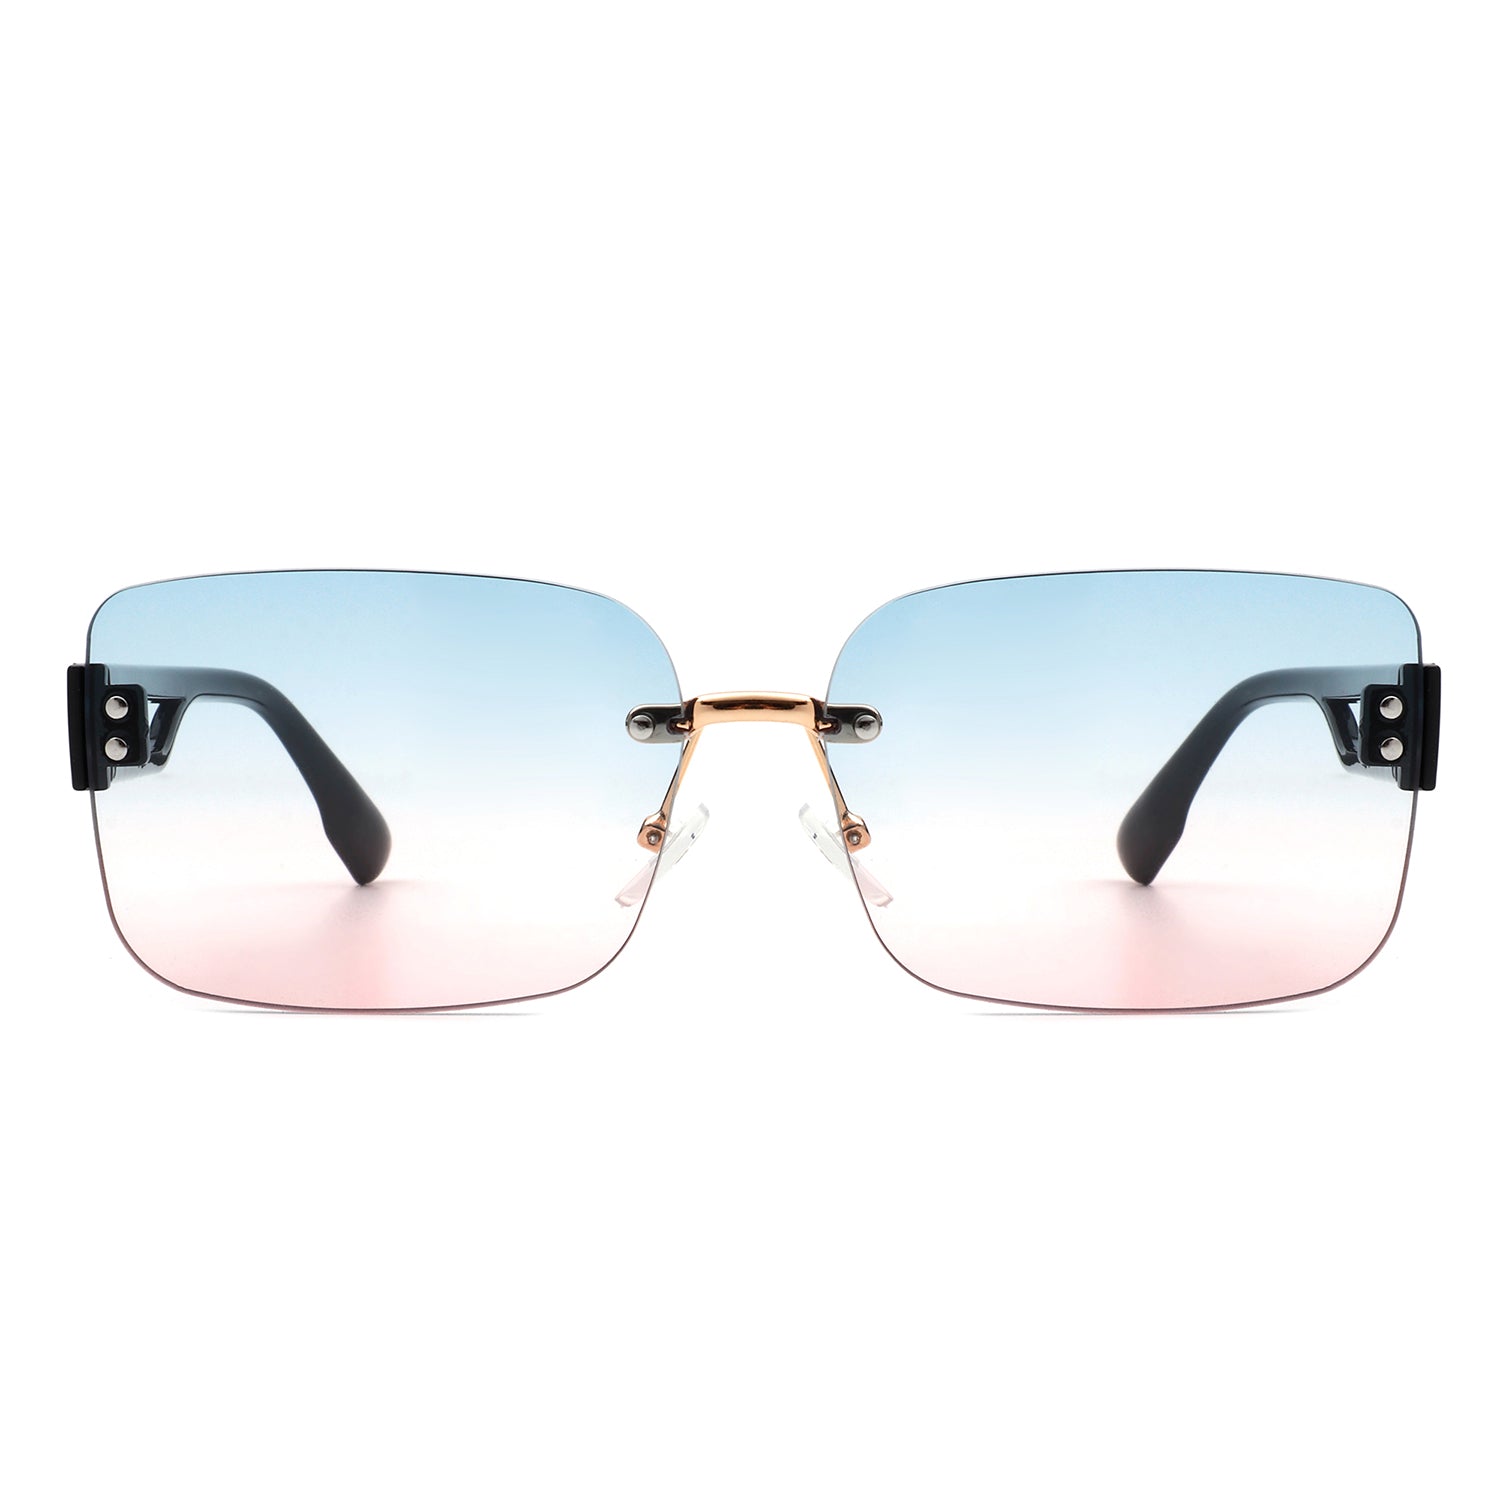 Rimless Square Sunglasses – the jk counter